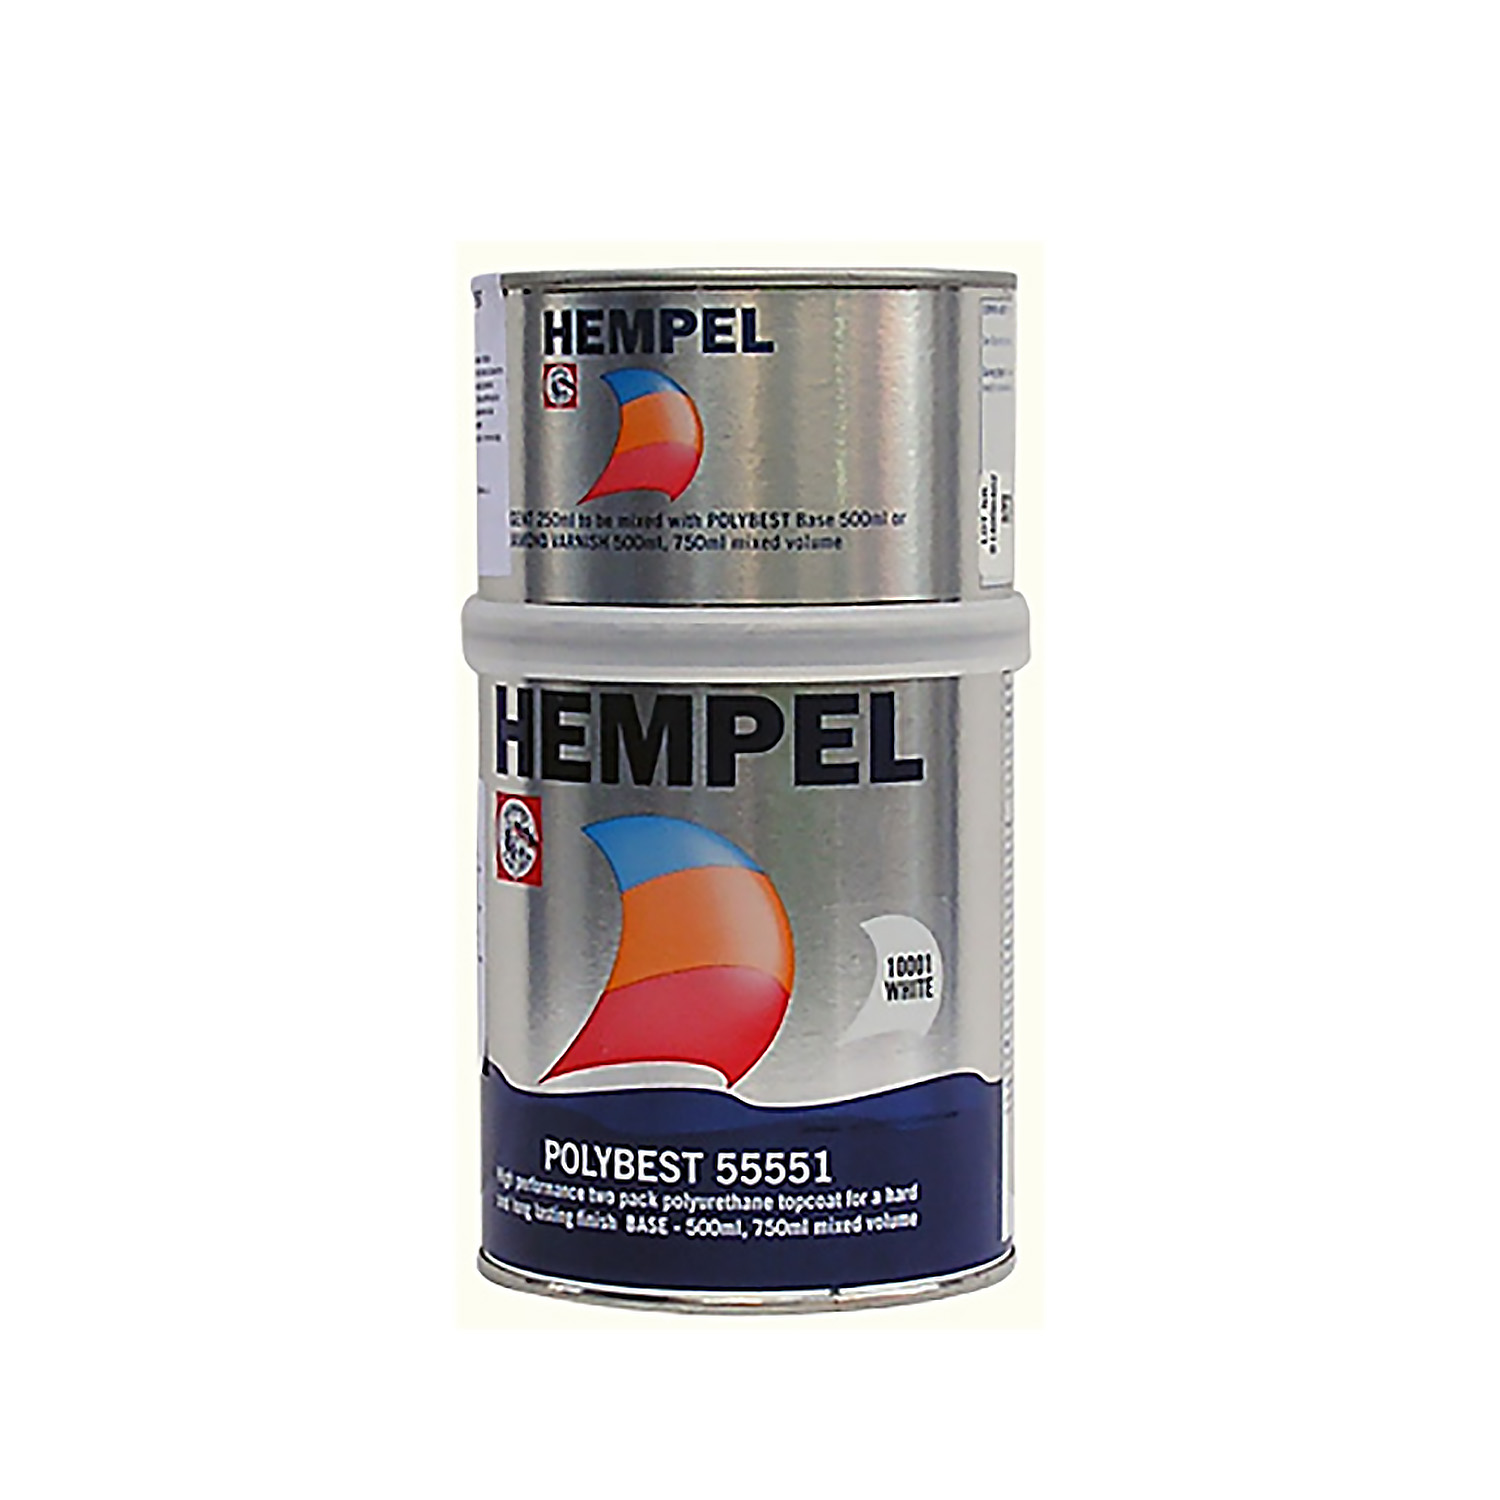 Эмаль двухкомпонентная полиуретановая Hempel Polybest 55551-50190 оранжевая (5019) 750мл